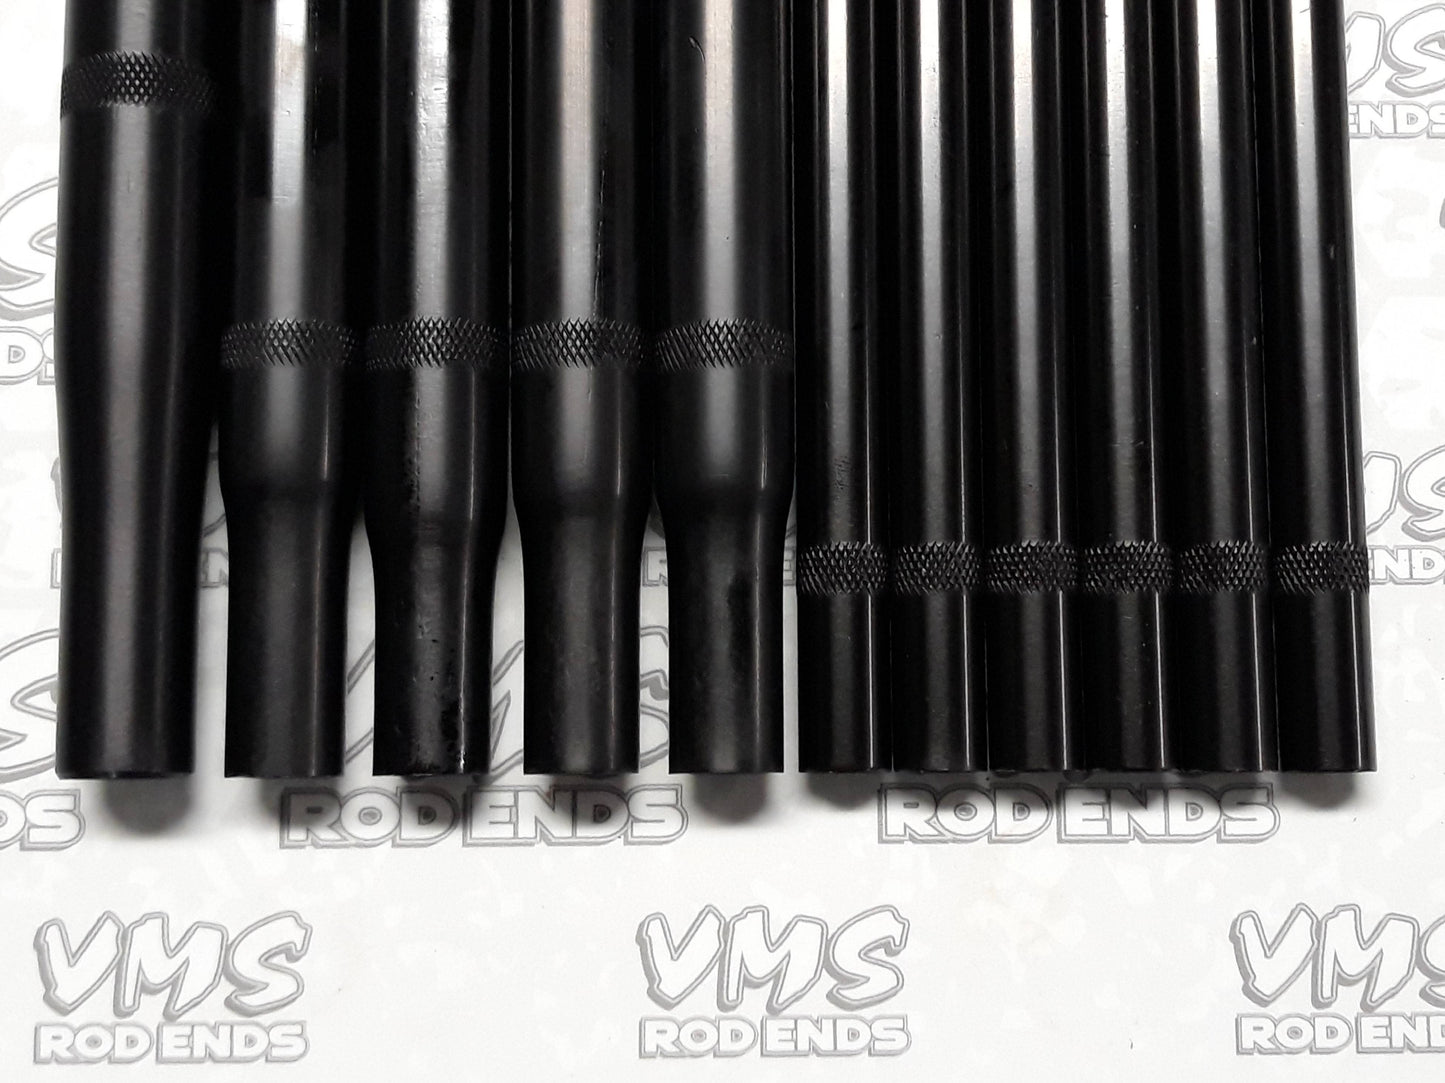 Bandolero Full Set of BLACK aluminum Rods